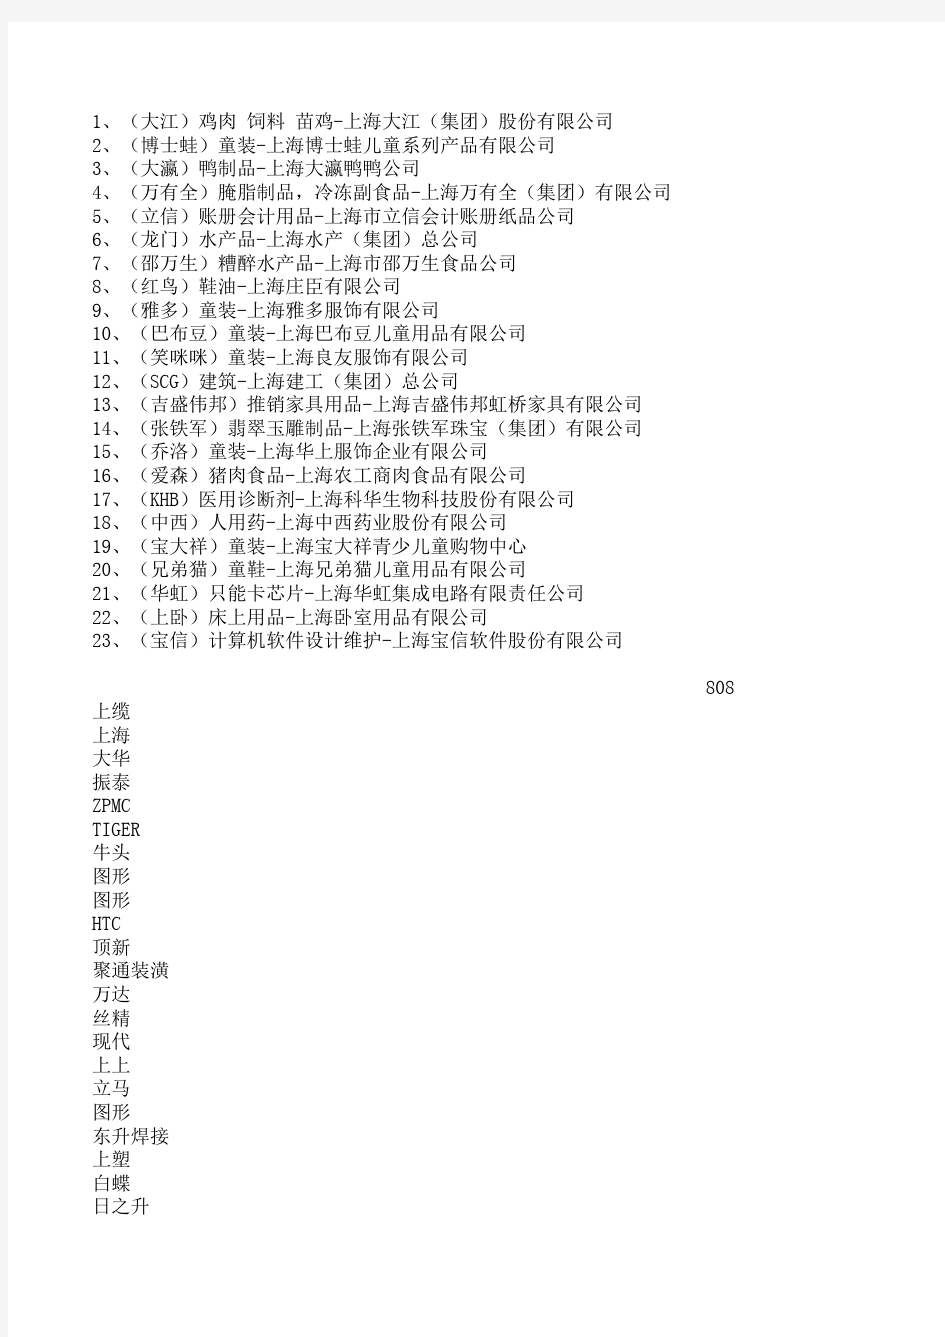 上海市著名商标企业名单